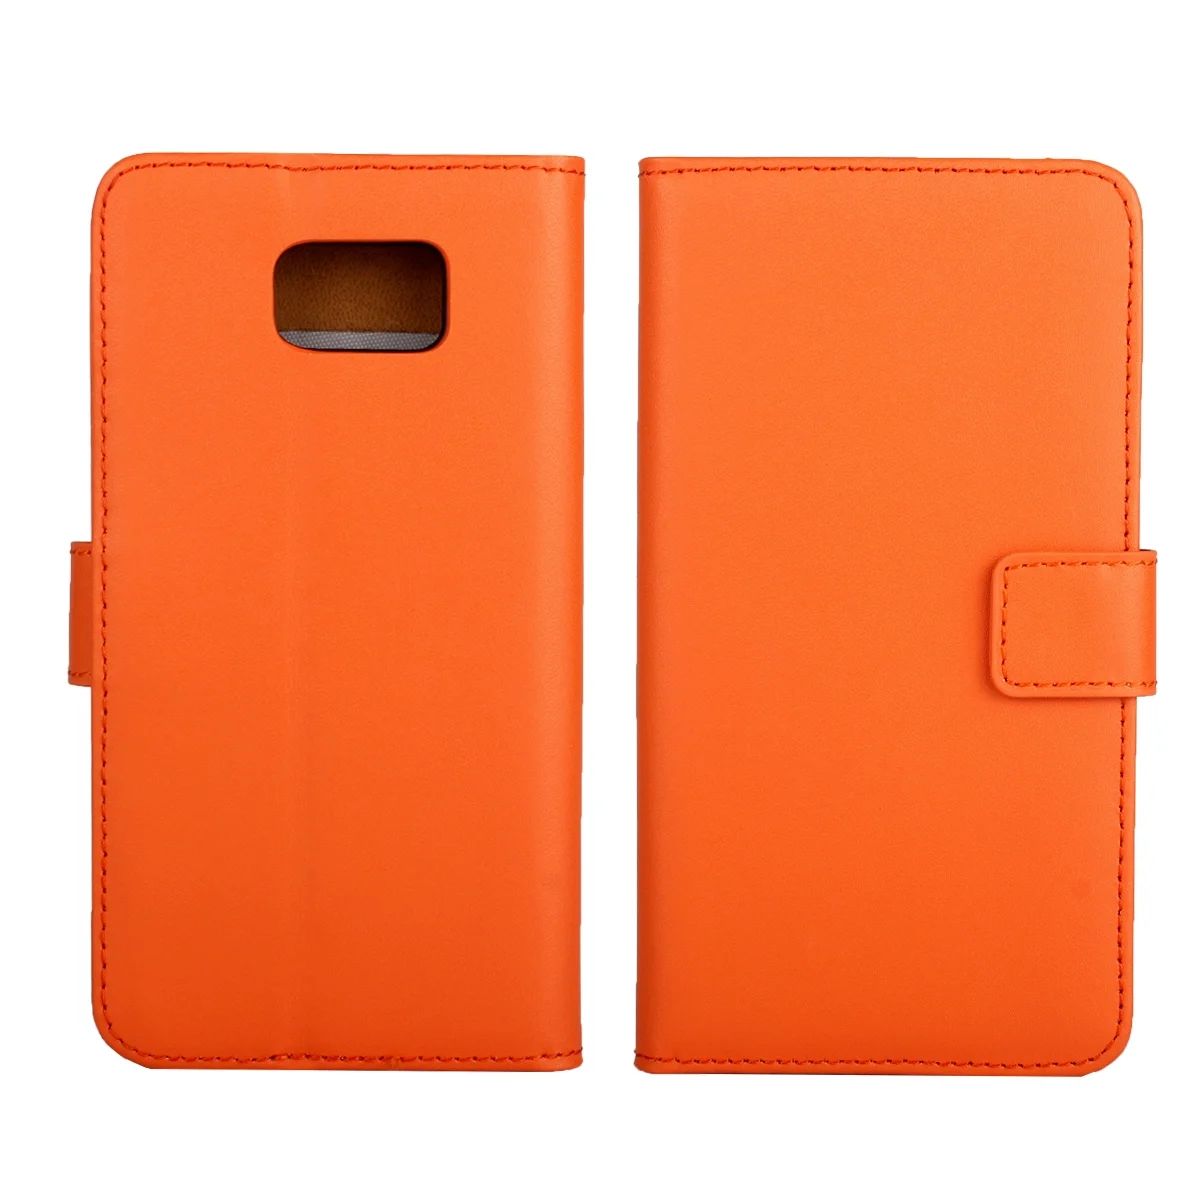 Чехол-книжка для samsung Note5 из искусственной кожи премиум класса, чехол-книжка для samsung Galaxy Note 5 N9200 N920F, чехол с отделением для наличных денег GG - Цвет: Оранжевый